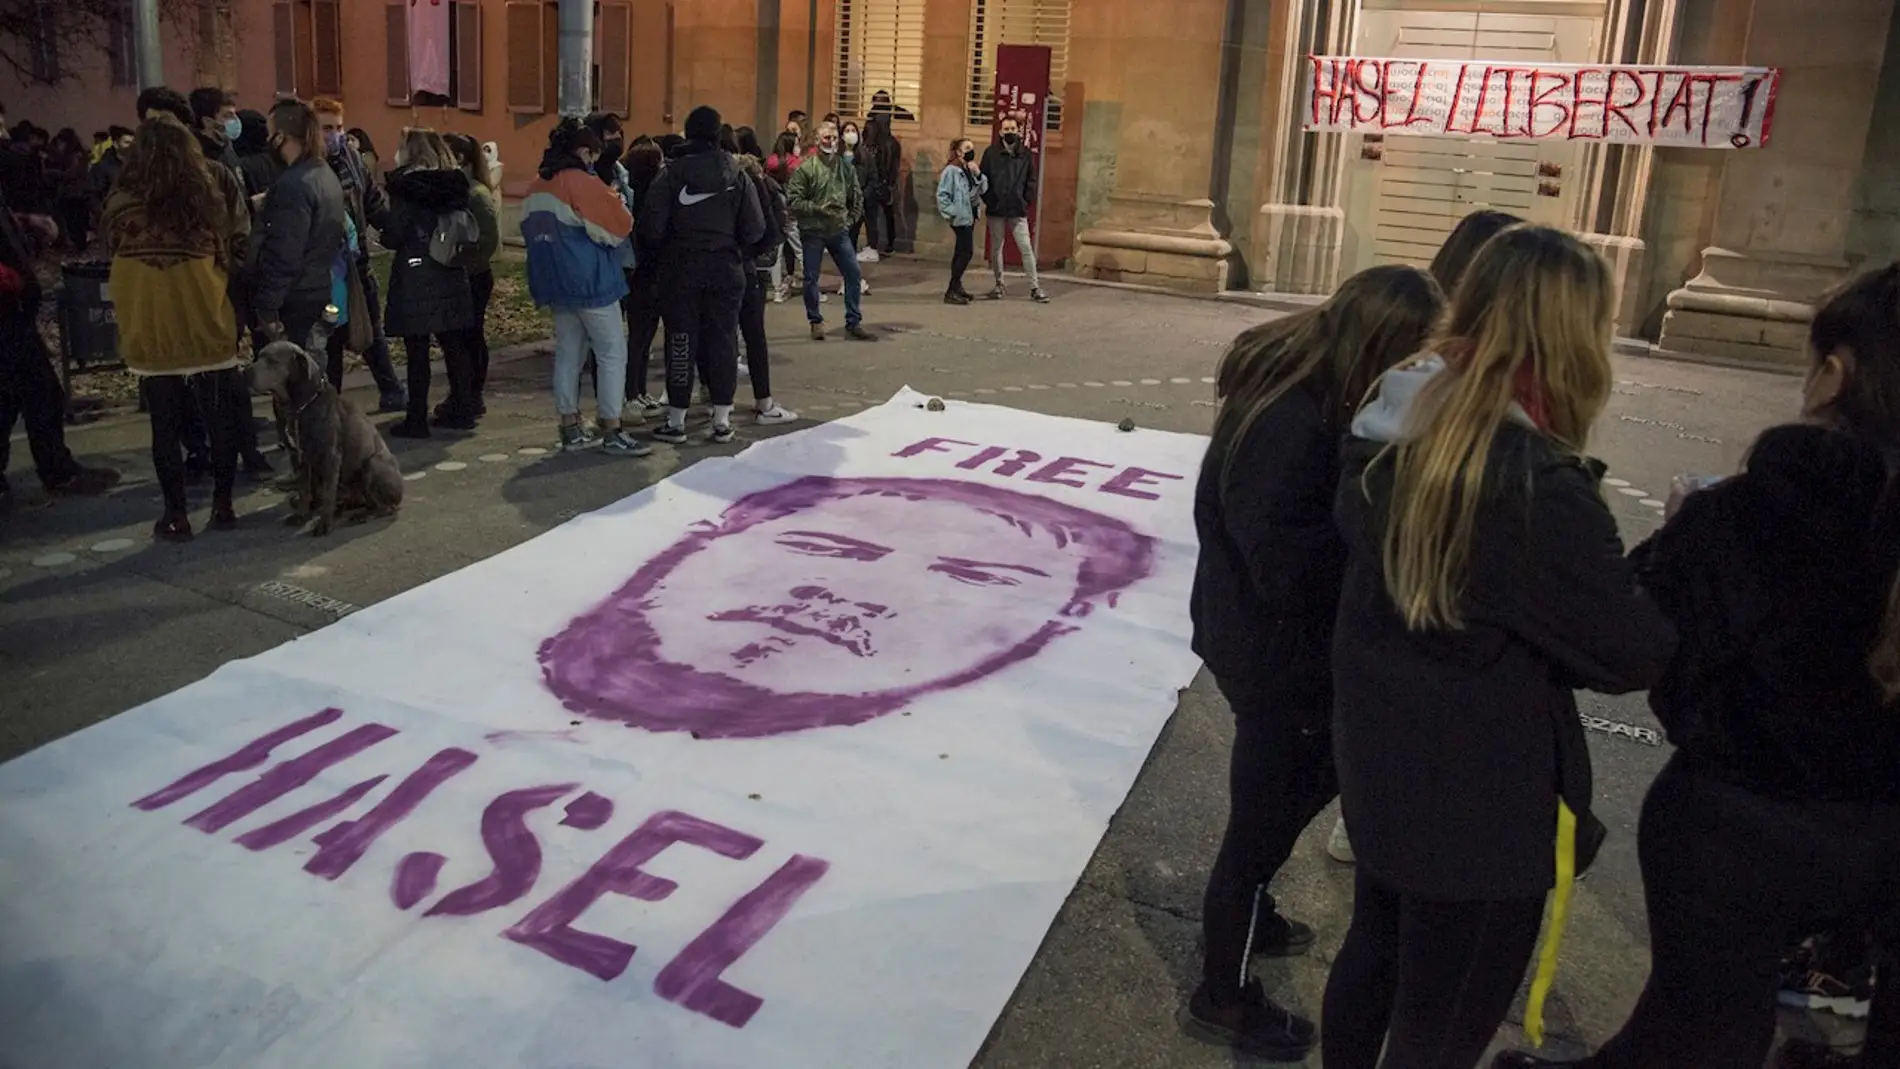 Los Mossos entran en el rectorado de Universidad de Lleida para detener a Hasel